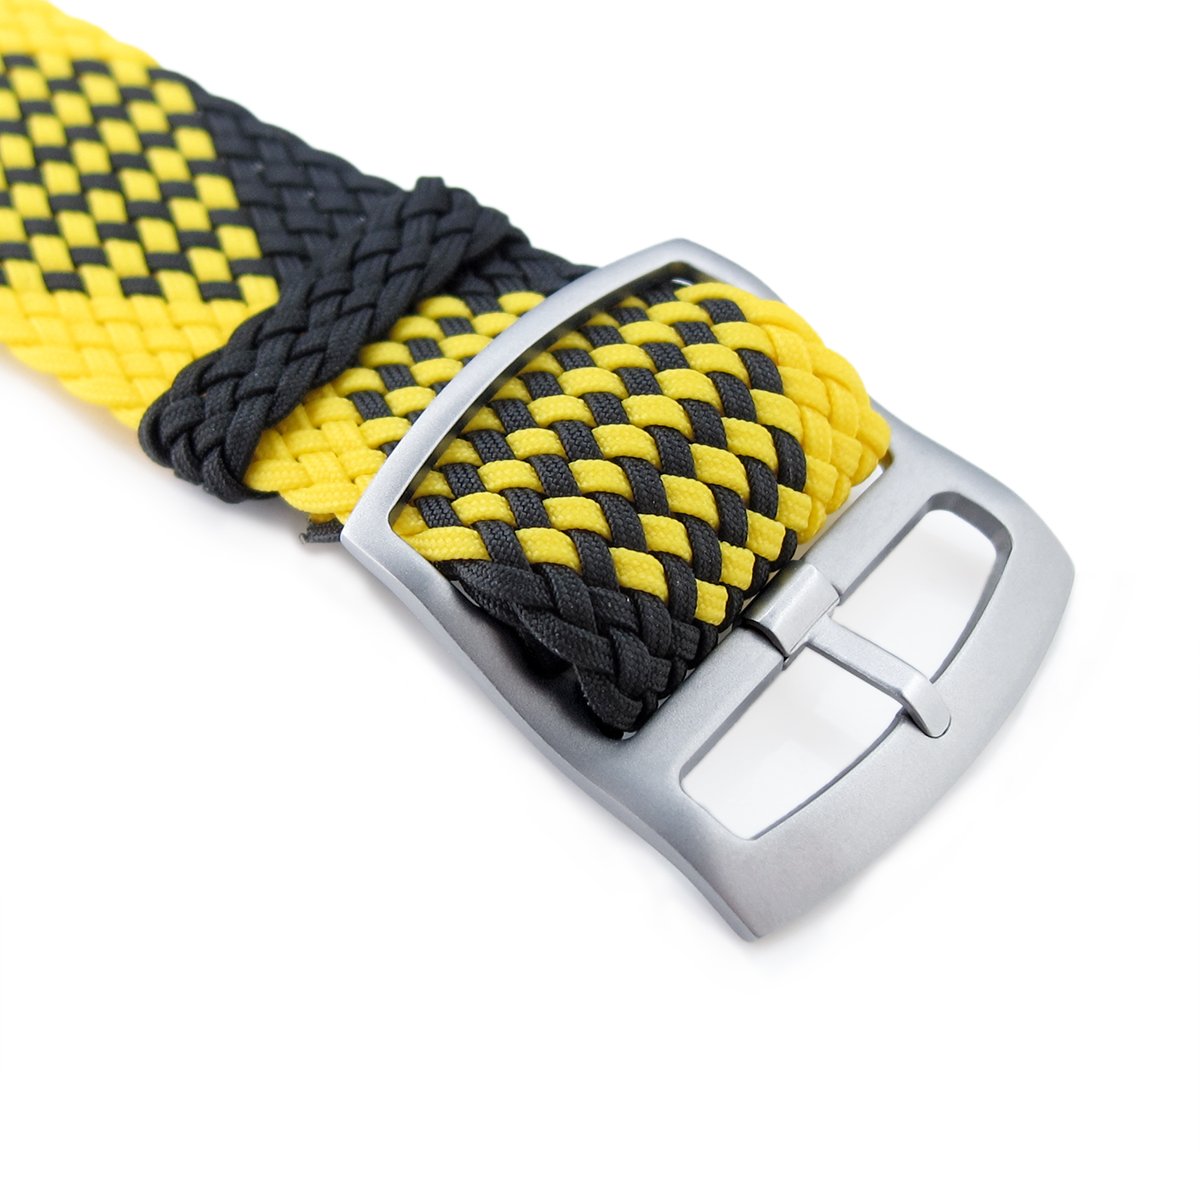 20mm MiLTAT Perlon Watch Strap Black & Yellow Sandblasted Ladder Lock Slider Buckle Strapcode Watch Bands